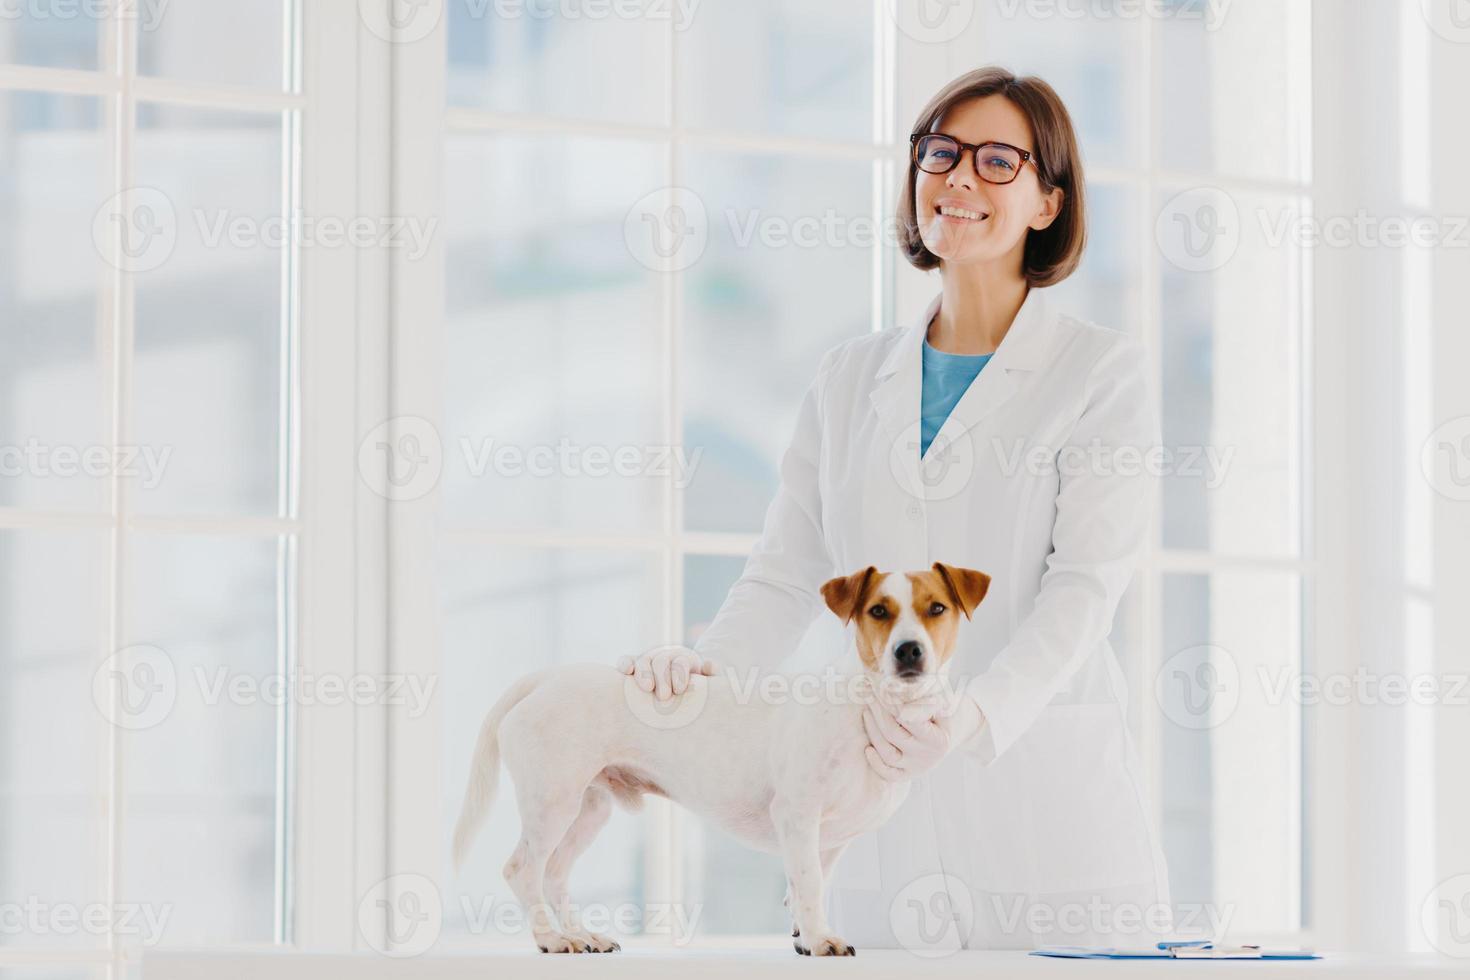 perro pedigrí russell terrier examinado y consultado por un veterinario, posa cerca de la mesa de examen en la clínica veterinaria, va a vacunarse en el consultorio médico. animal domestico visita buen doctor foto